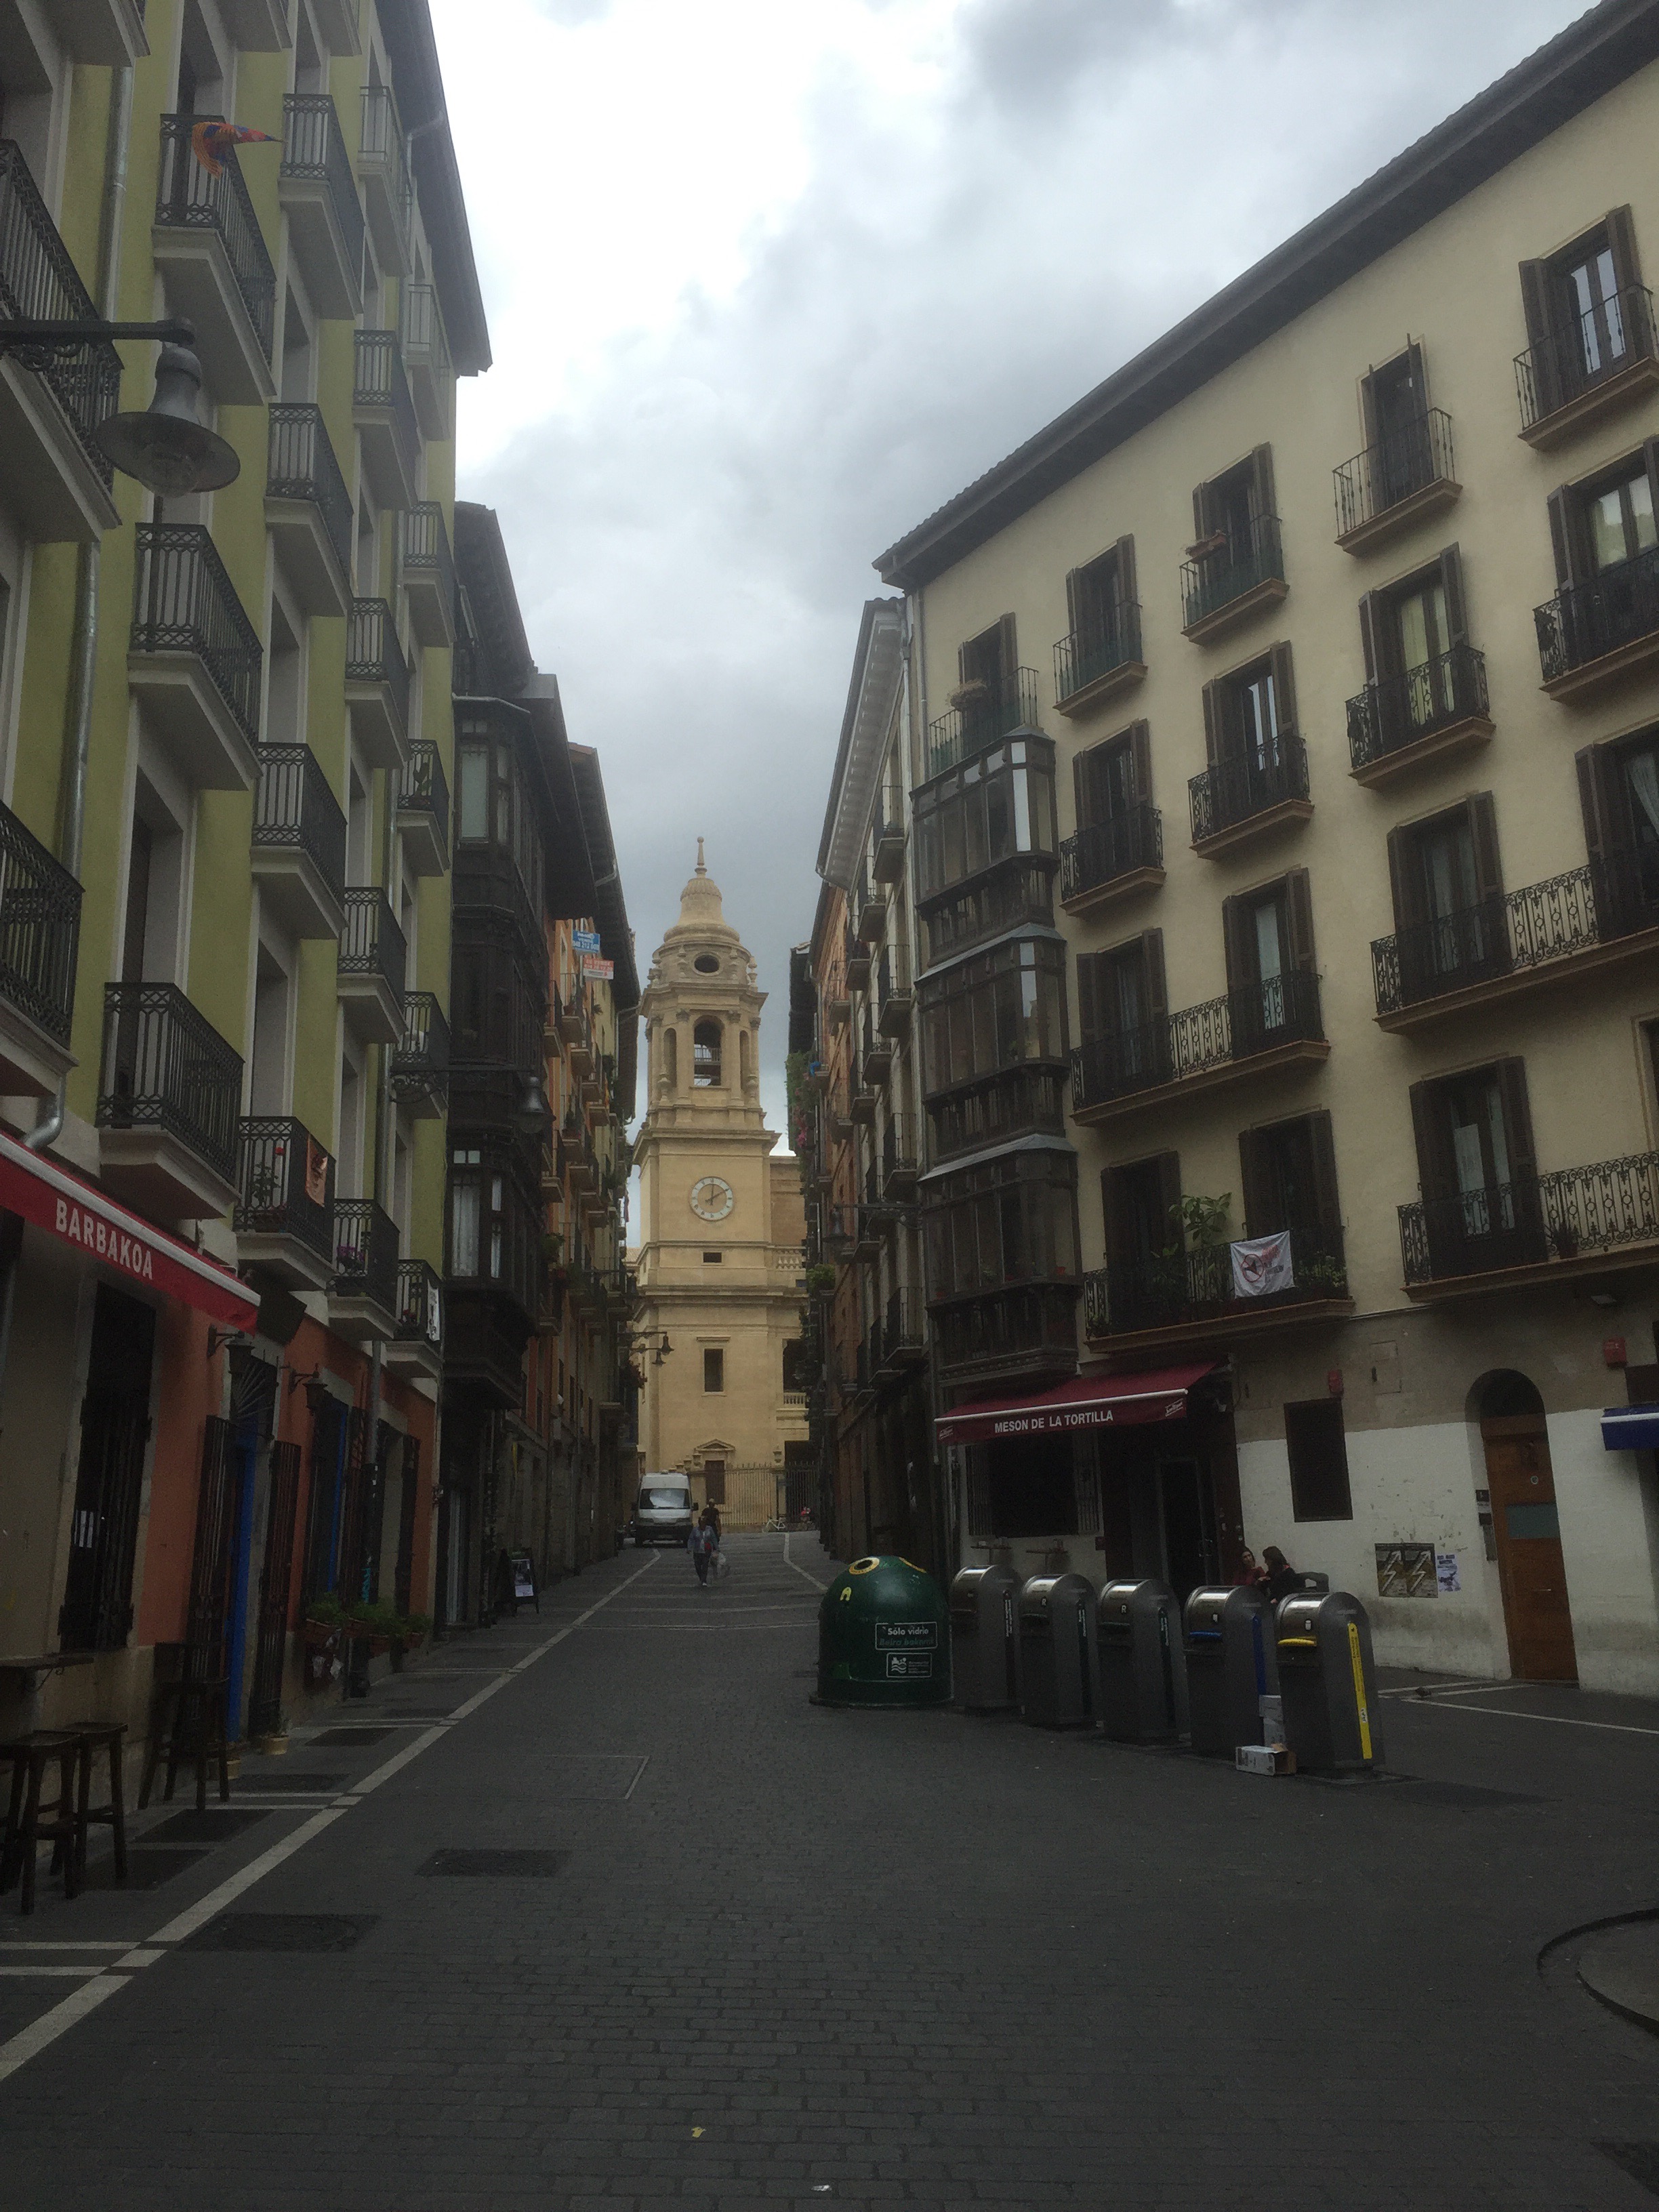 Camino day 3: Larrasoaña to Pamplona